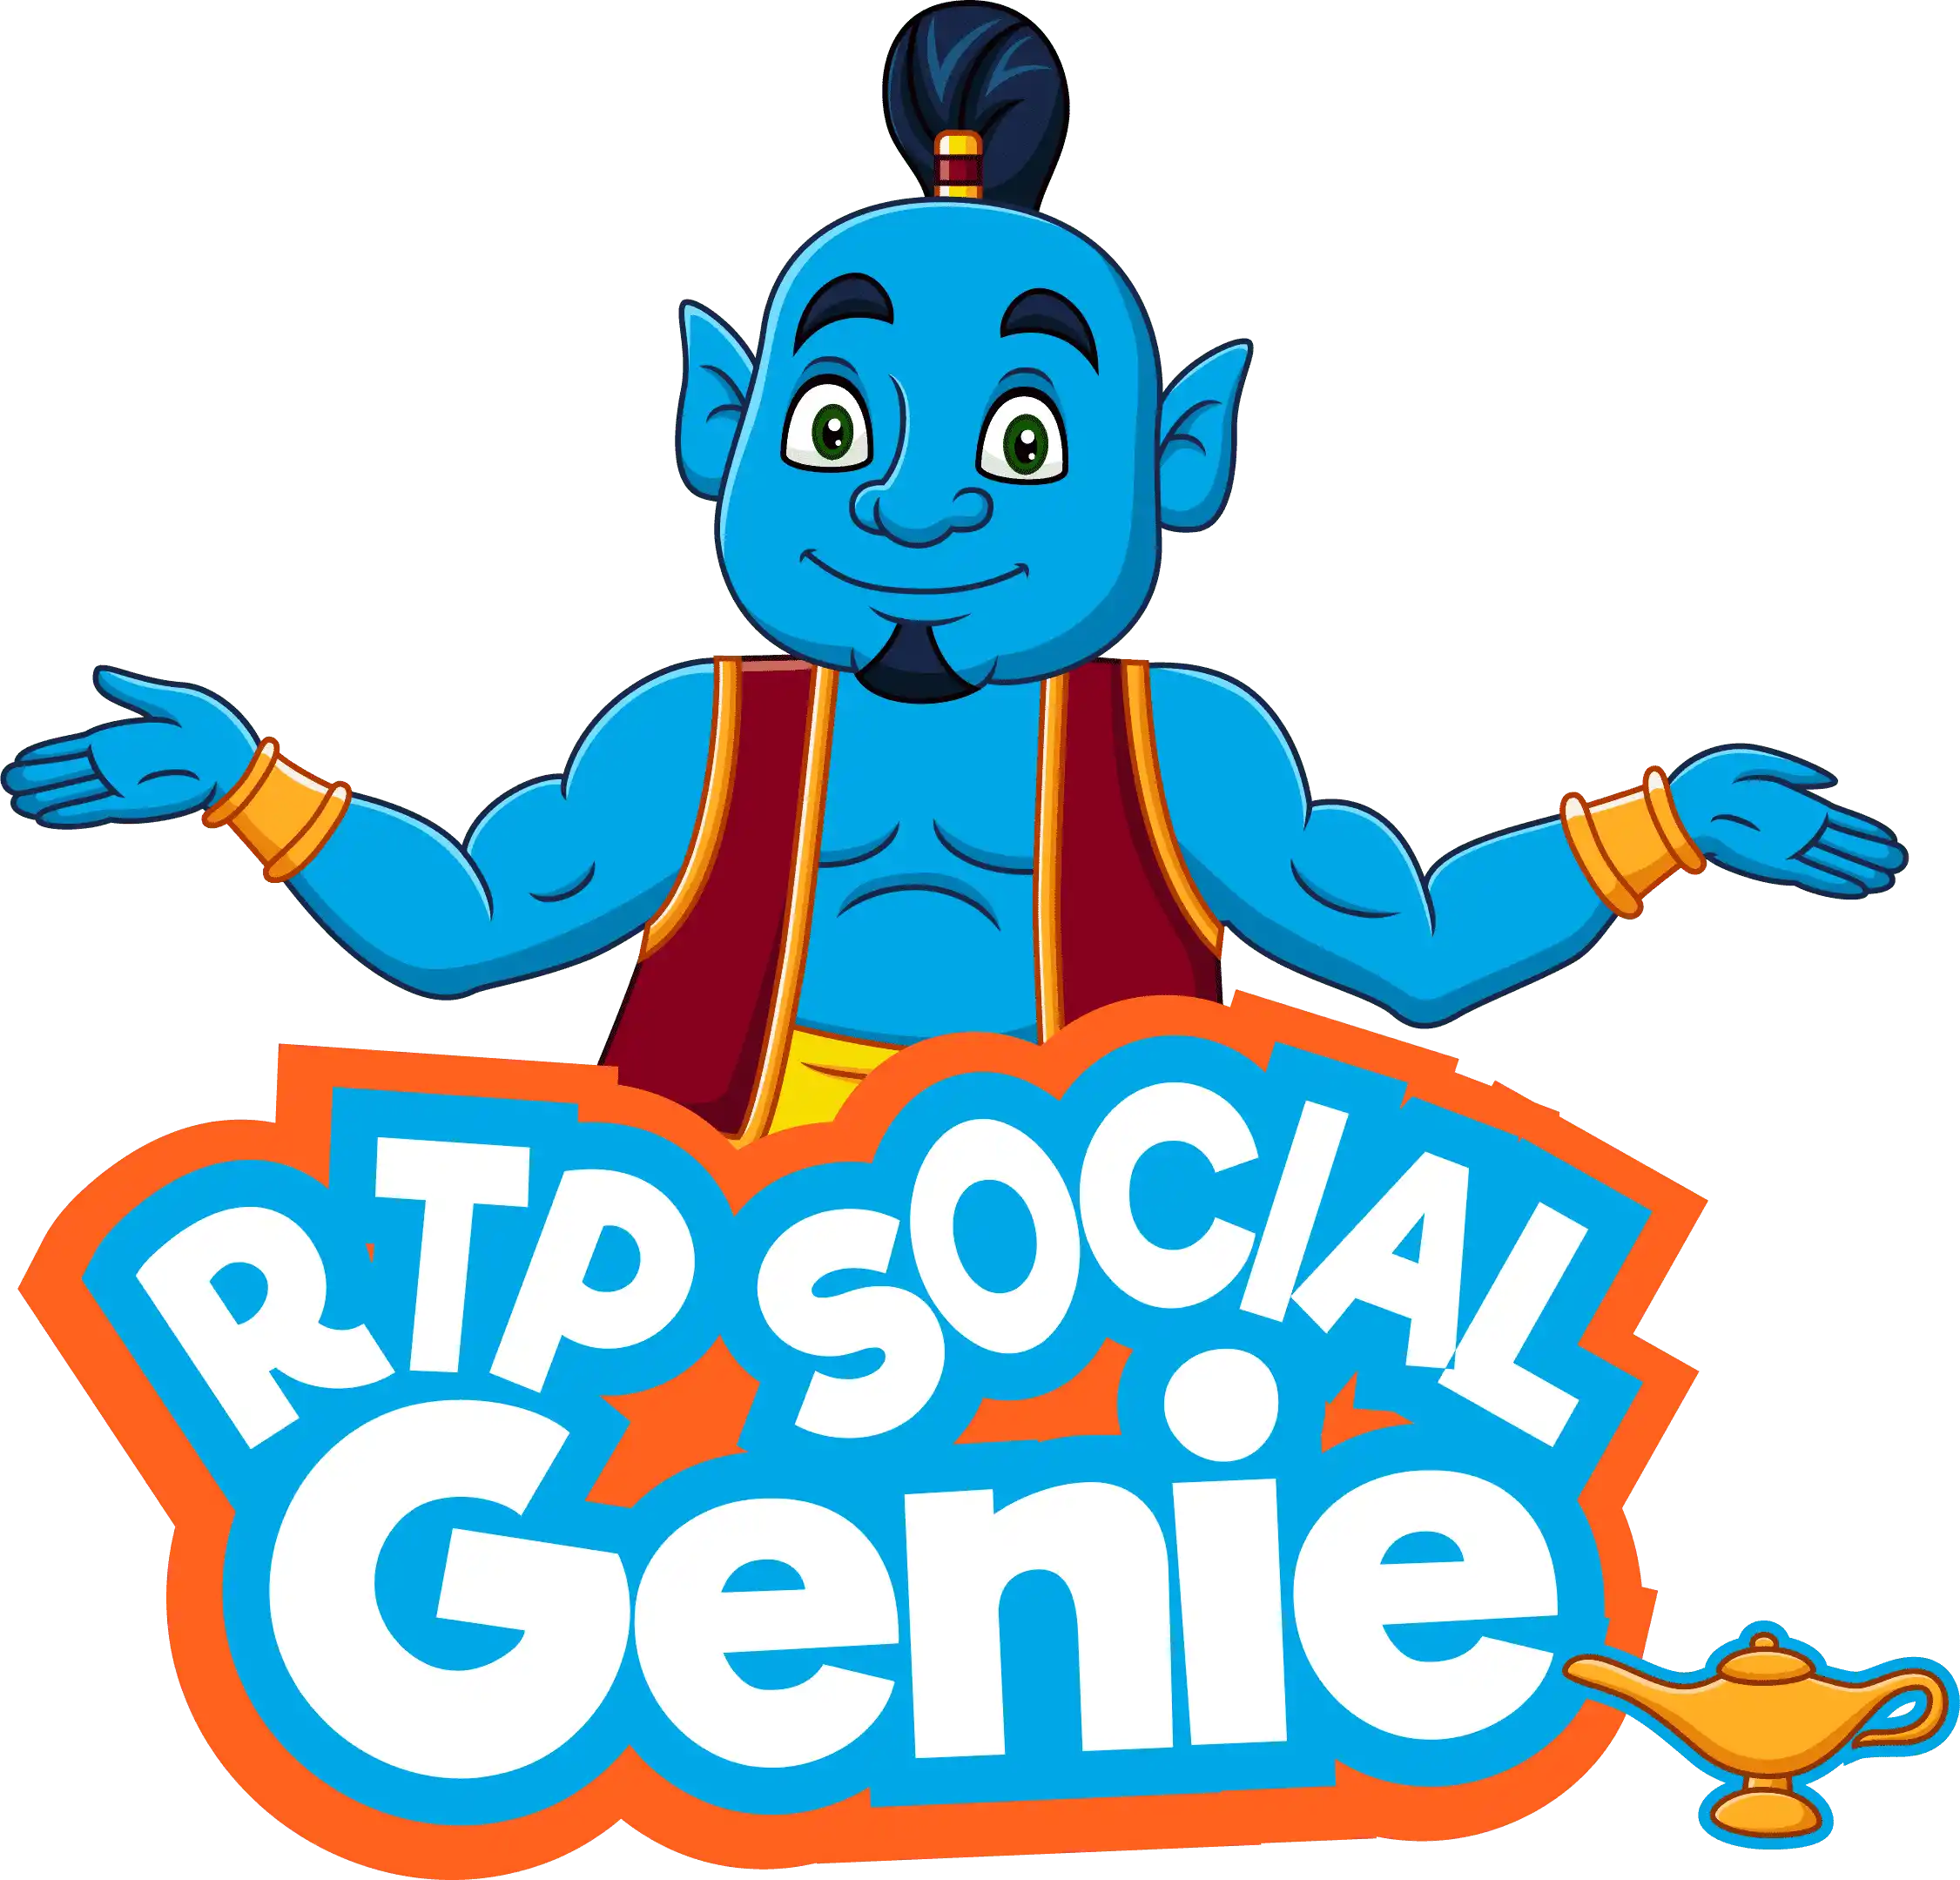 rtpsocialsolution-genie-logo